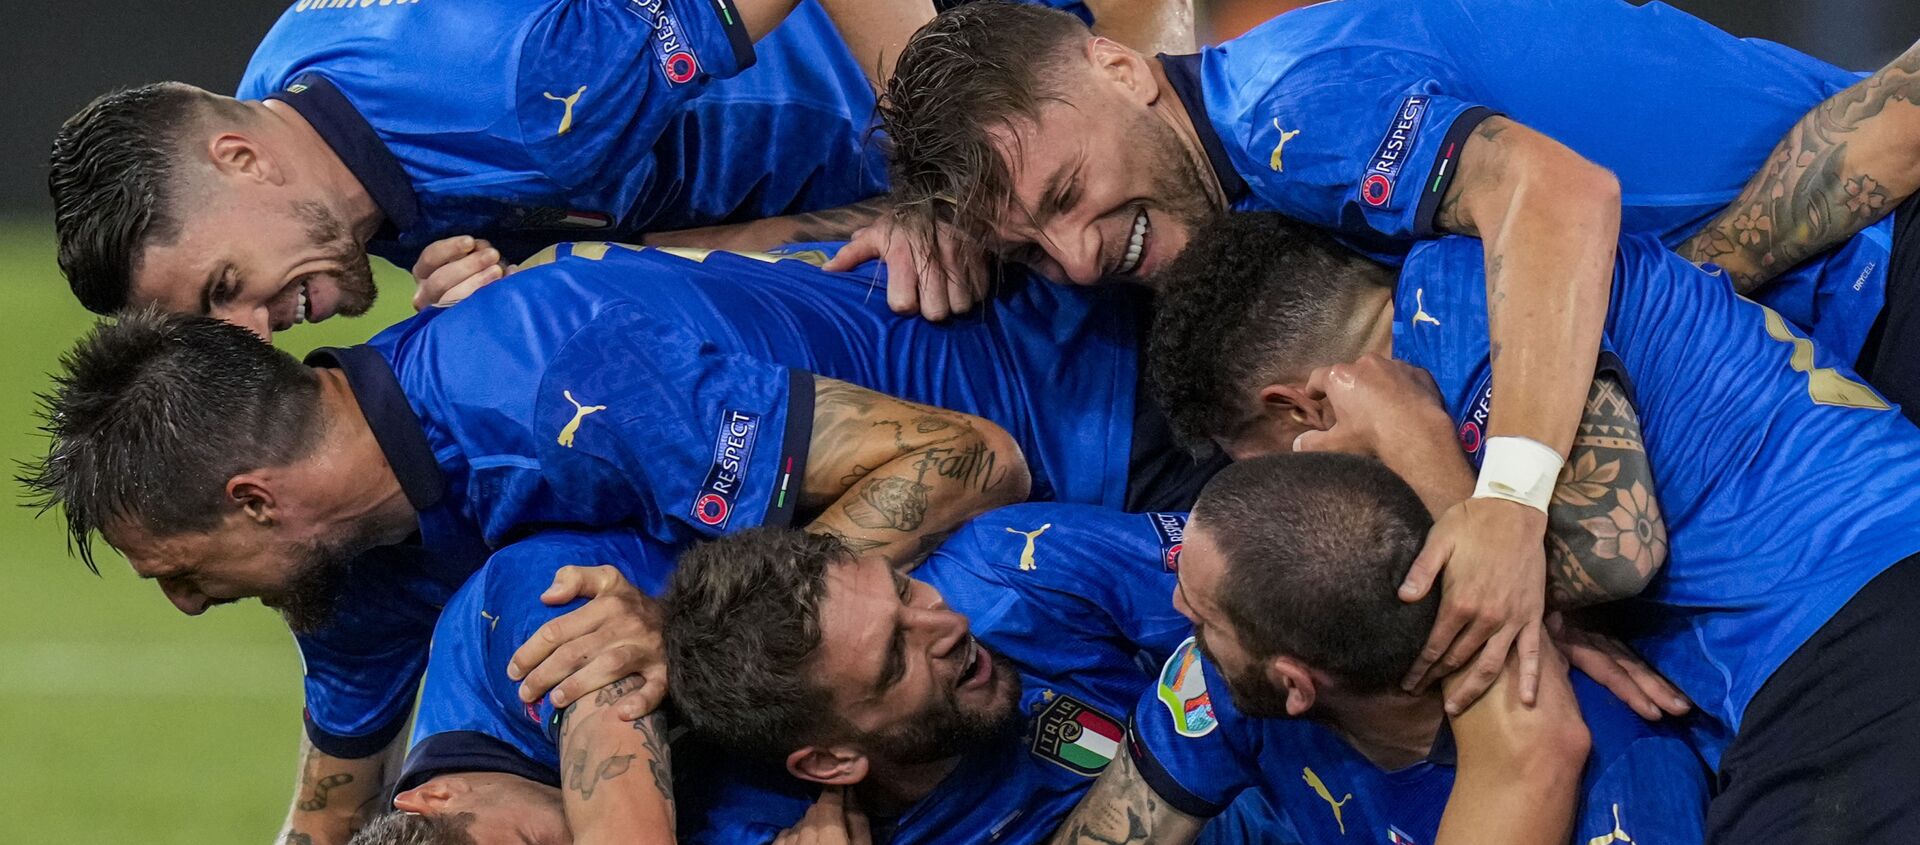 Игроки сборной Италии празднуют свой второй гол во время матча группы А чемпионата ЕВРО-2020 между сборными Италии и Швейцарии на олимпийском стадионе в Риме, Италия - Sputnik Грузия, 1920, 07.07.2021